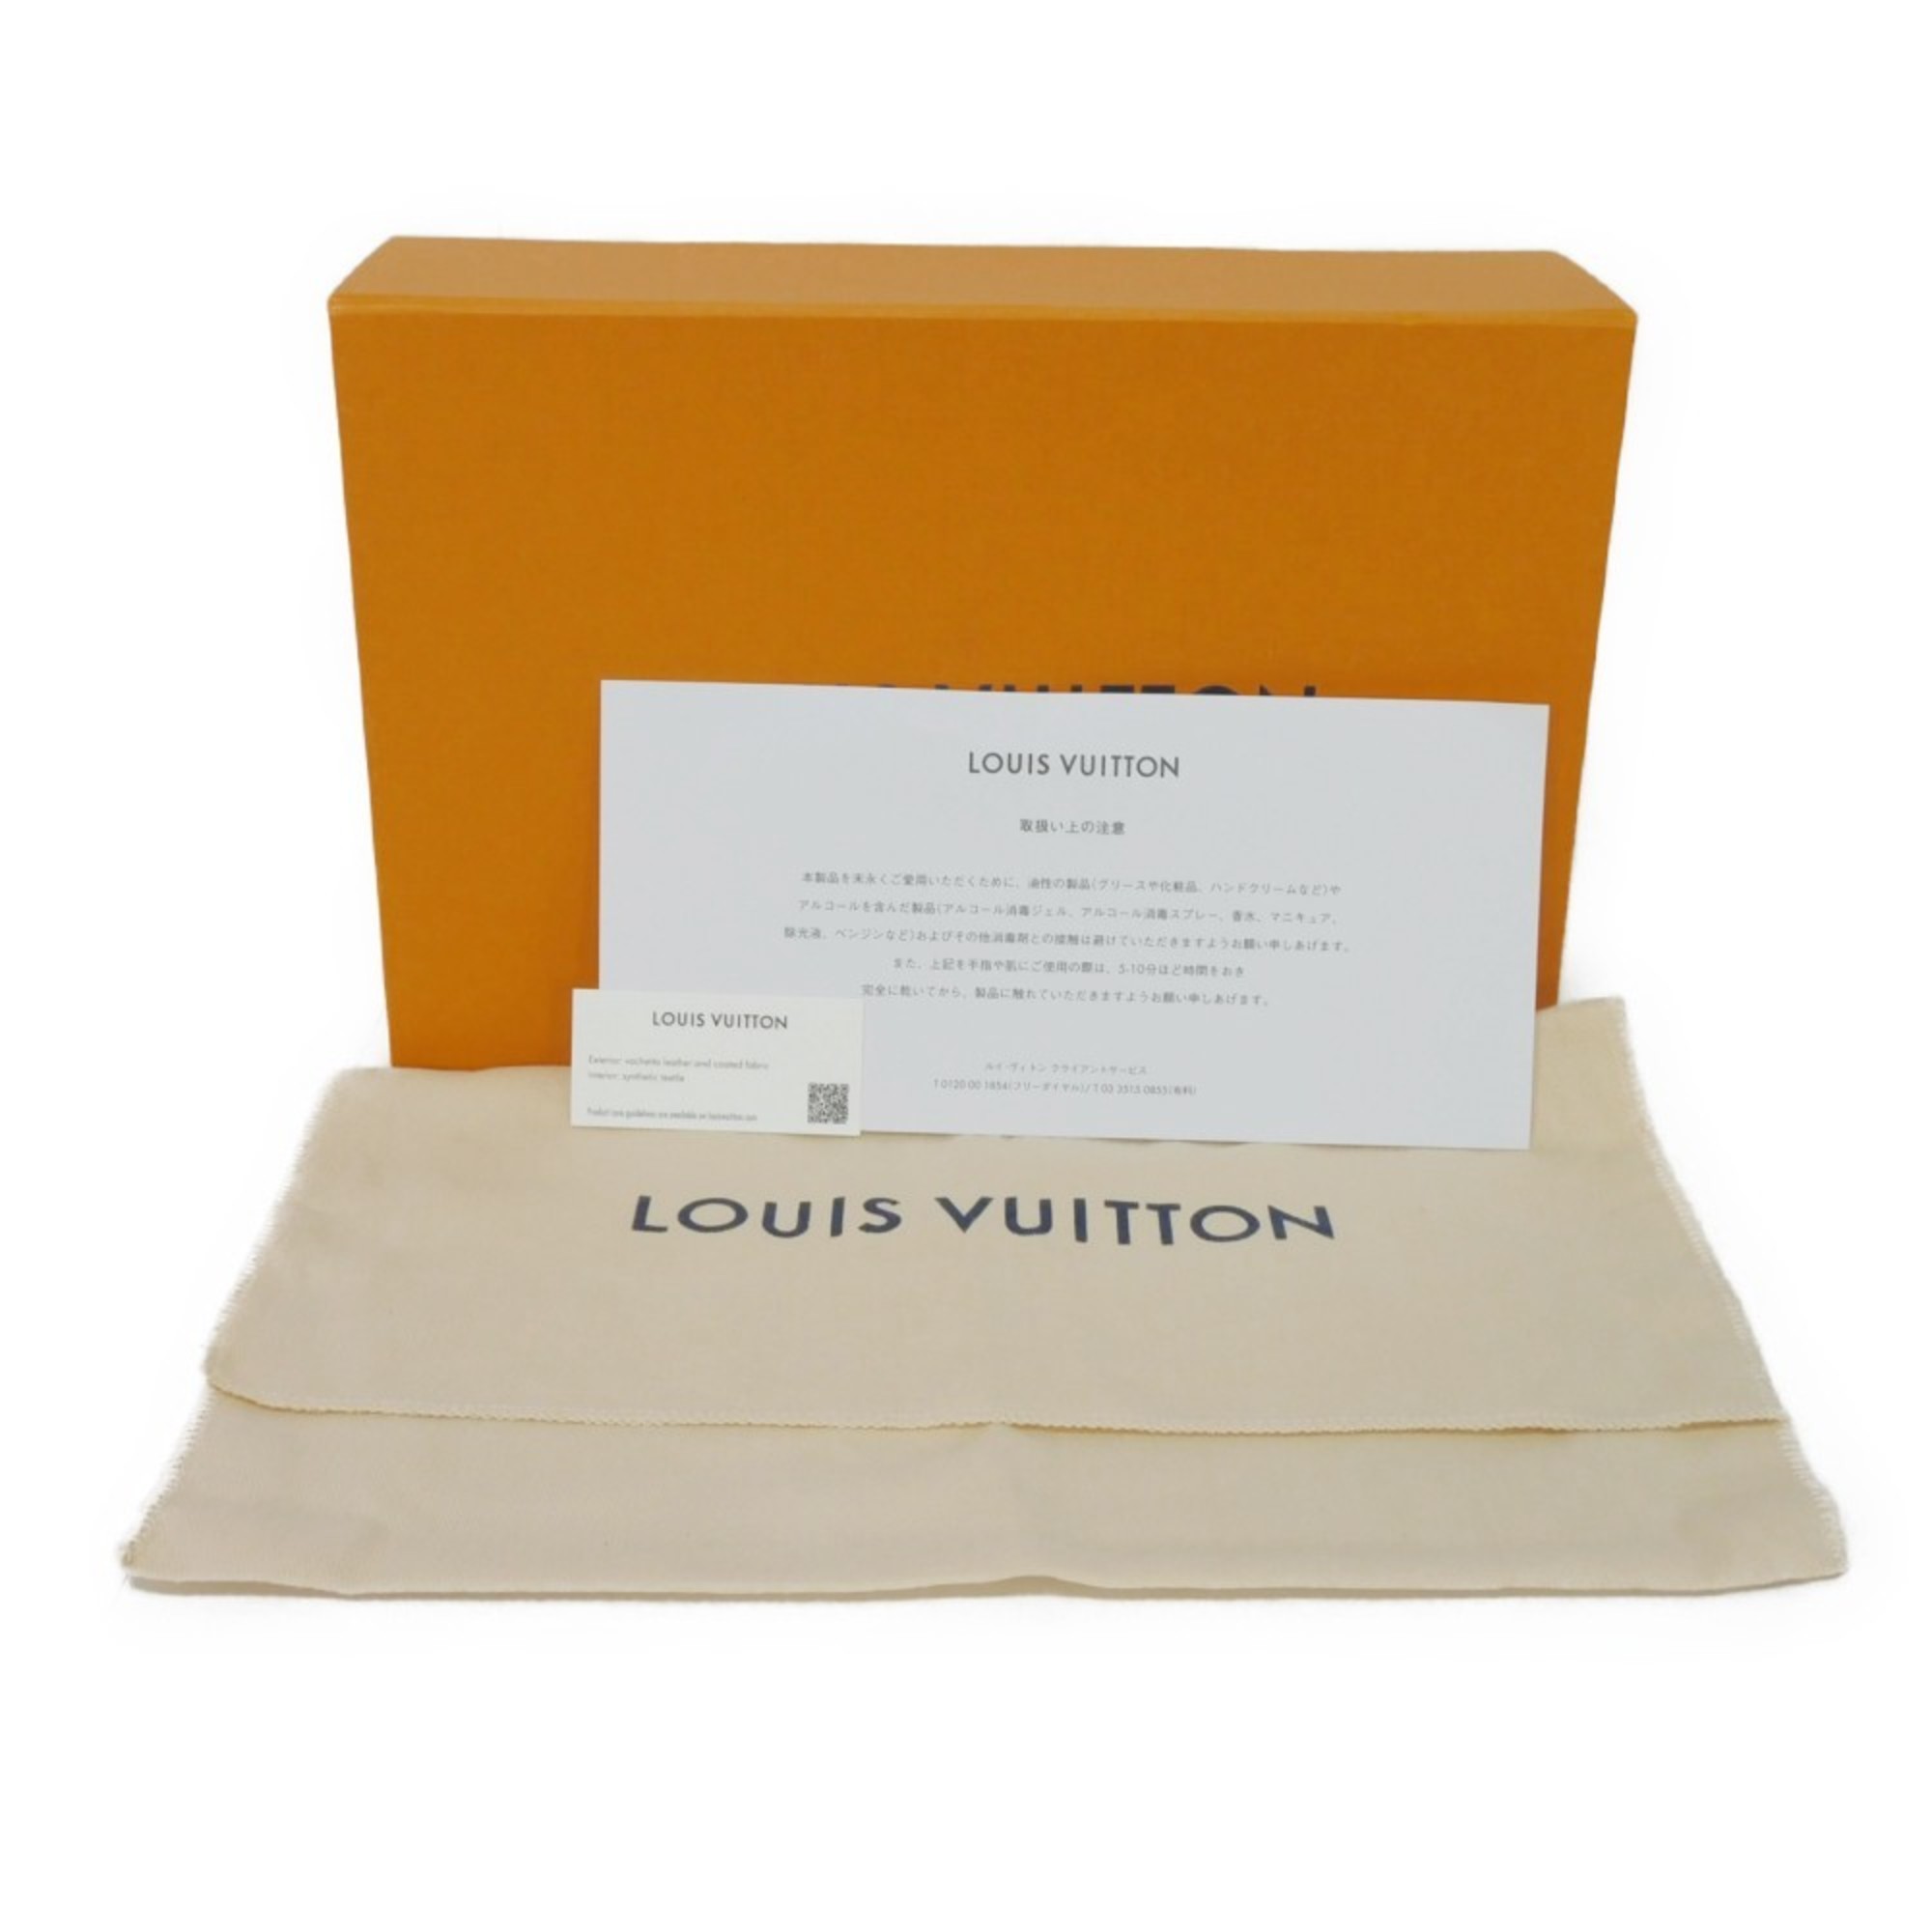 Louis Vuitton LOUIS VUITTON Pen Case Truth Elisabeth LV Flower Brown Red Pencil Circle Monogram Rouge GI0009 Men's Women's